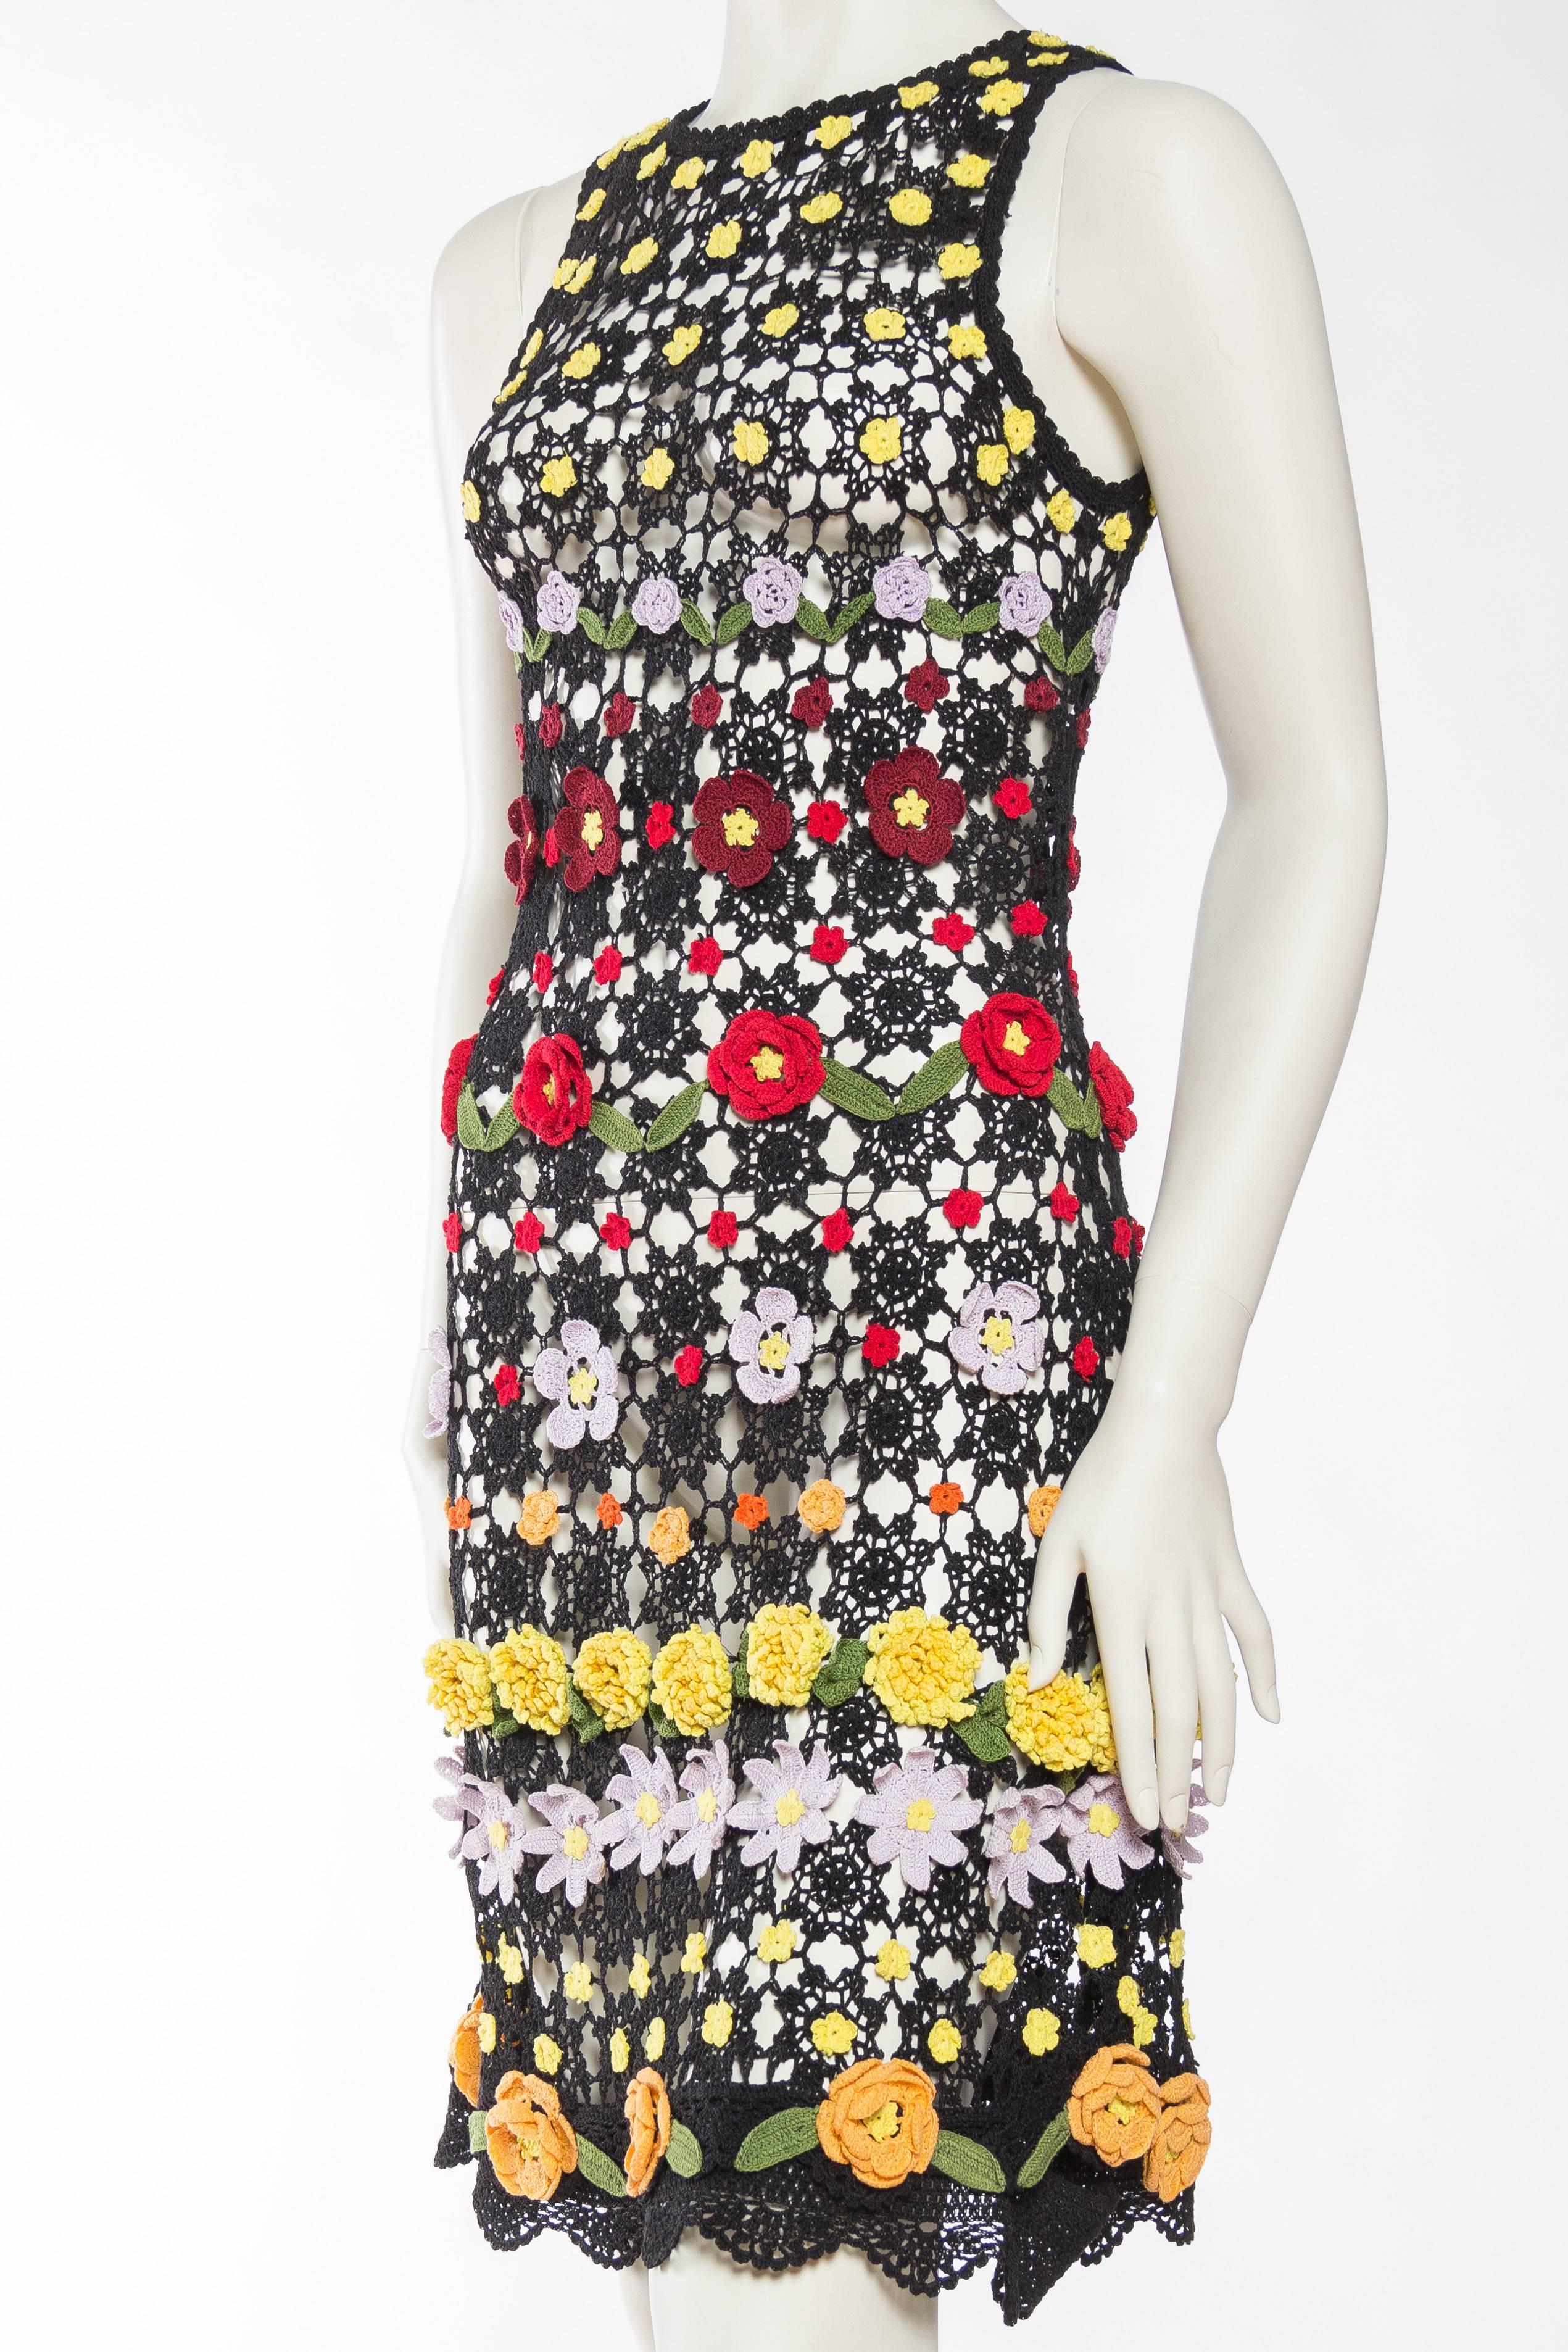 Women's Super Cute Floral Crochet Dress